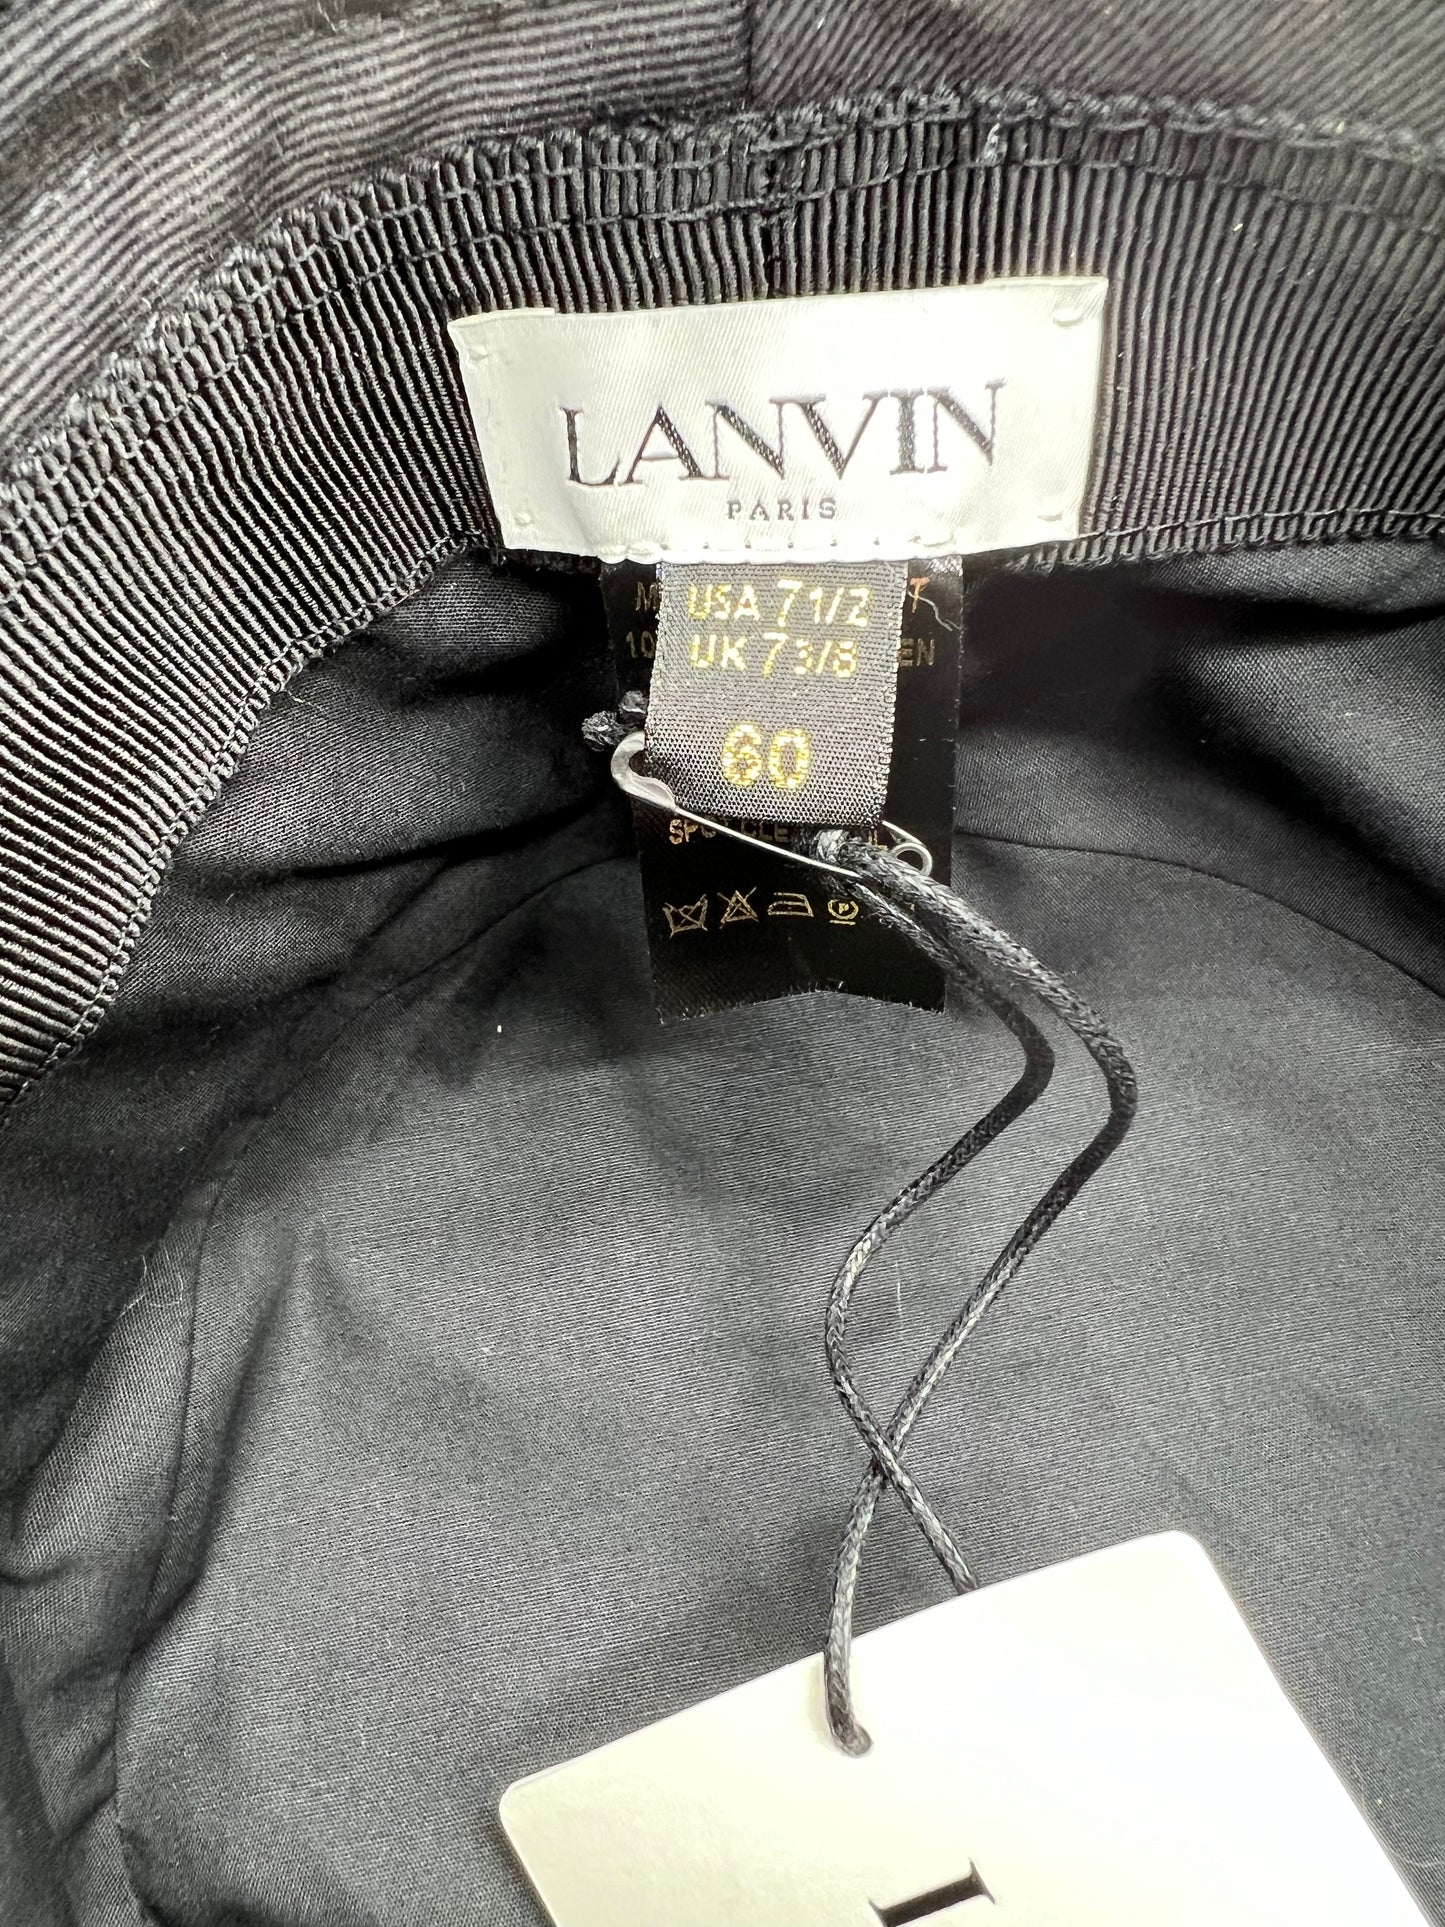 Lanvin Black Colorful Fringe Logo Size 60 Bucket Hat